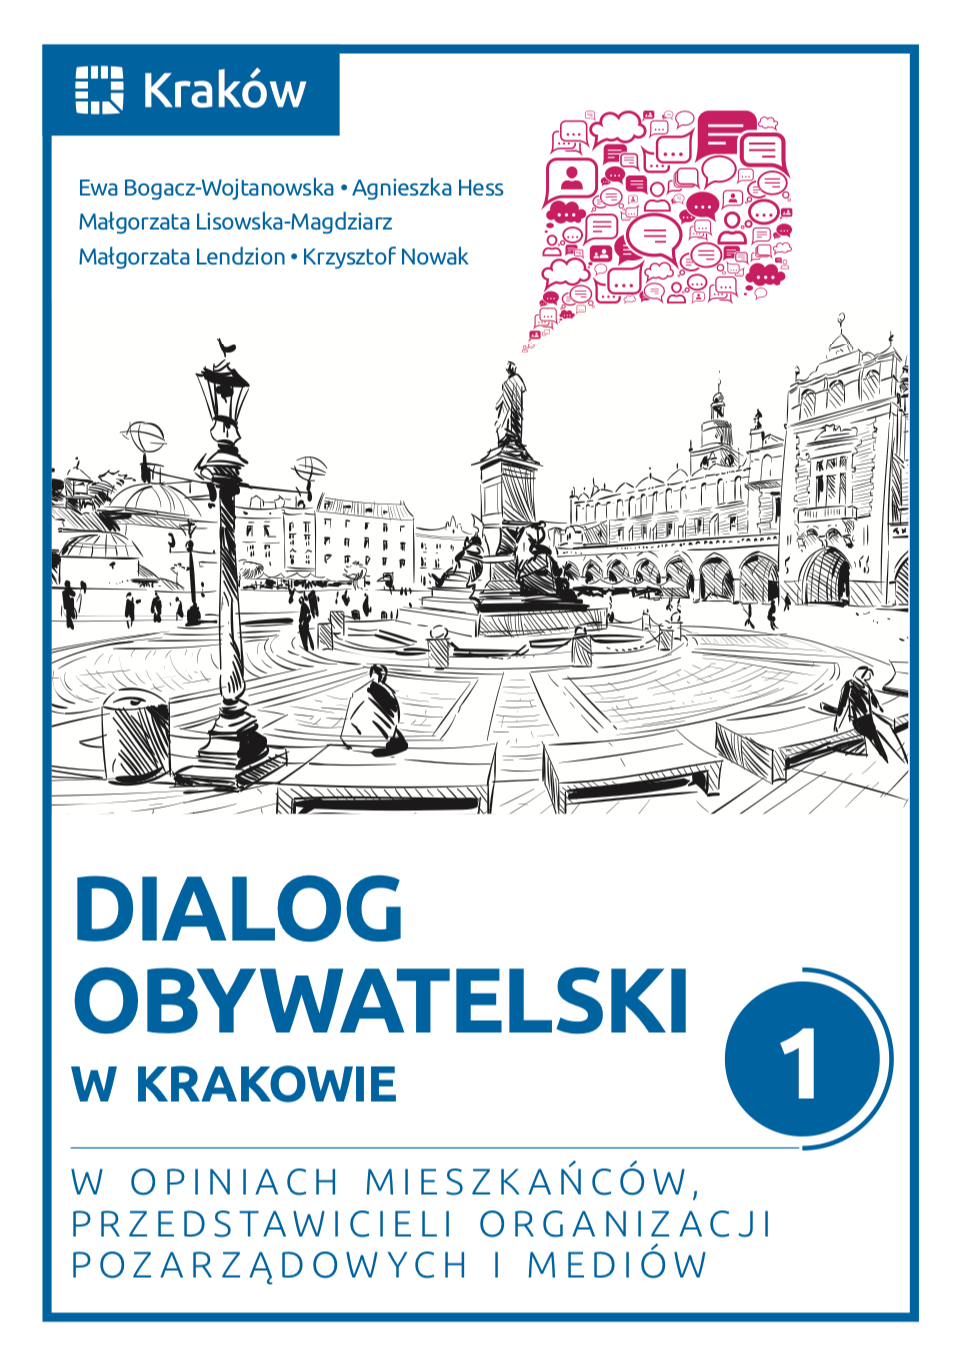 okładka książki "Dialog obywatelski w Krakowie 1. W opiniach mieszkańców, przedstawicieli organizacji pozarządowych i mediów"